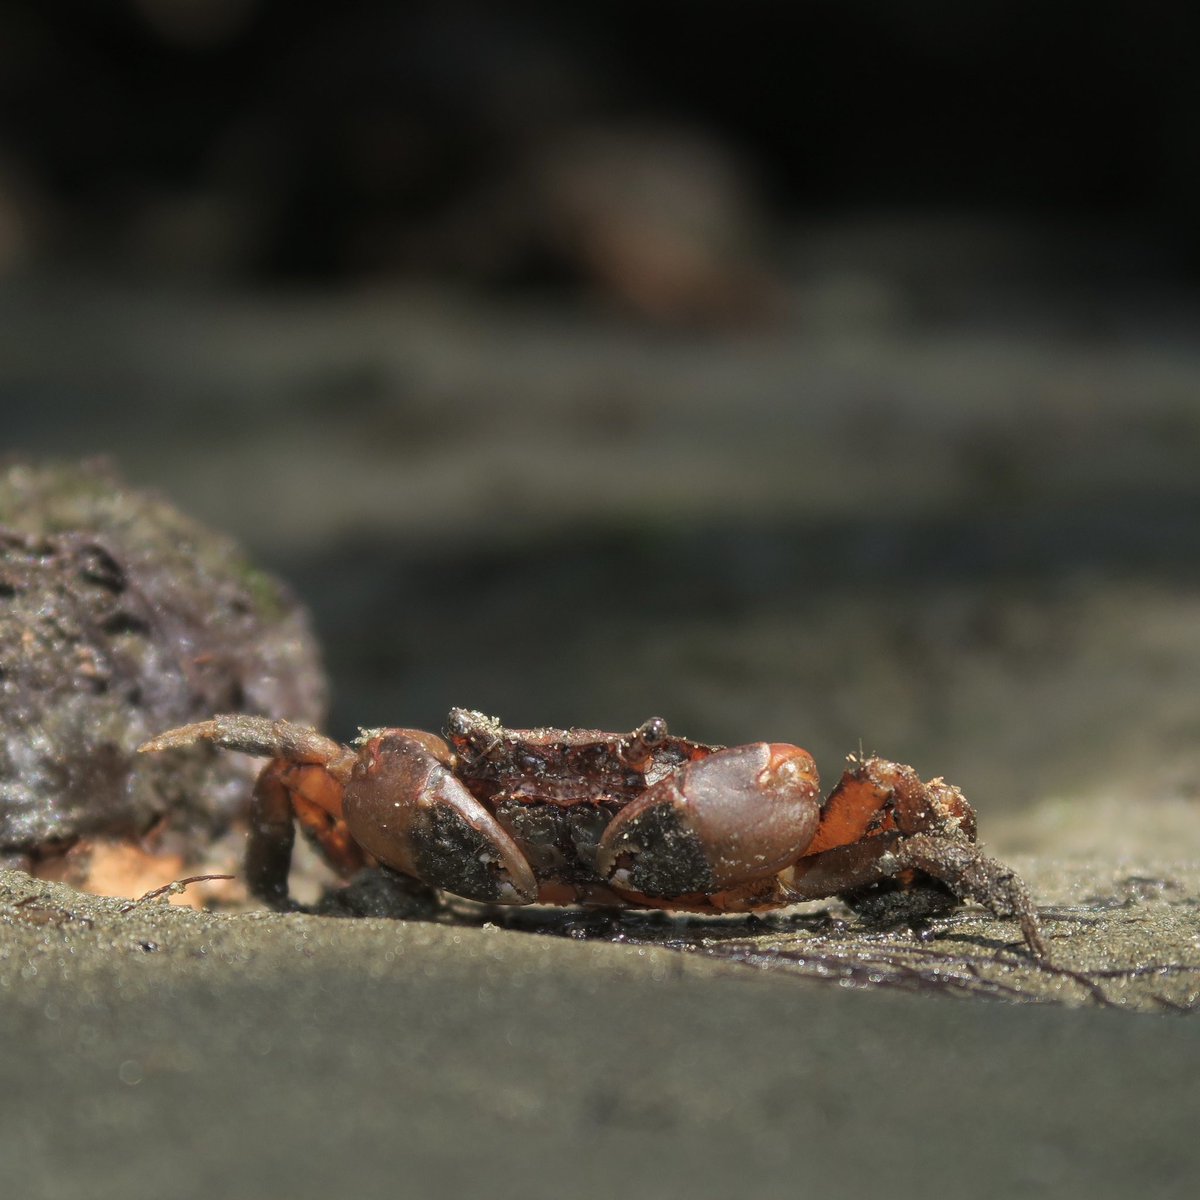 こんばんは。フィジーにいたヒラモクズガニの仲間です。日本にいるUtica borneensis とNew Caledoniaで出たU. barbimanaは同種である可能性を指摘する論文もありますが、産地の近い後者で仮置きです😅
Utica cf barbimana, found in a mangrove in Fiji. #crab #カニ